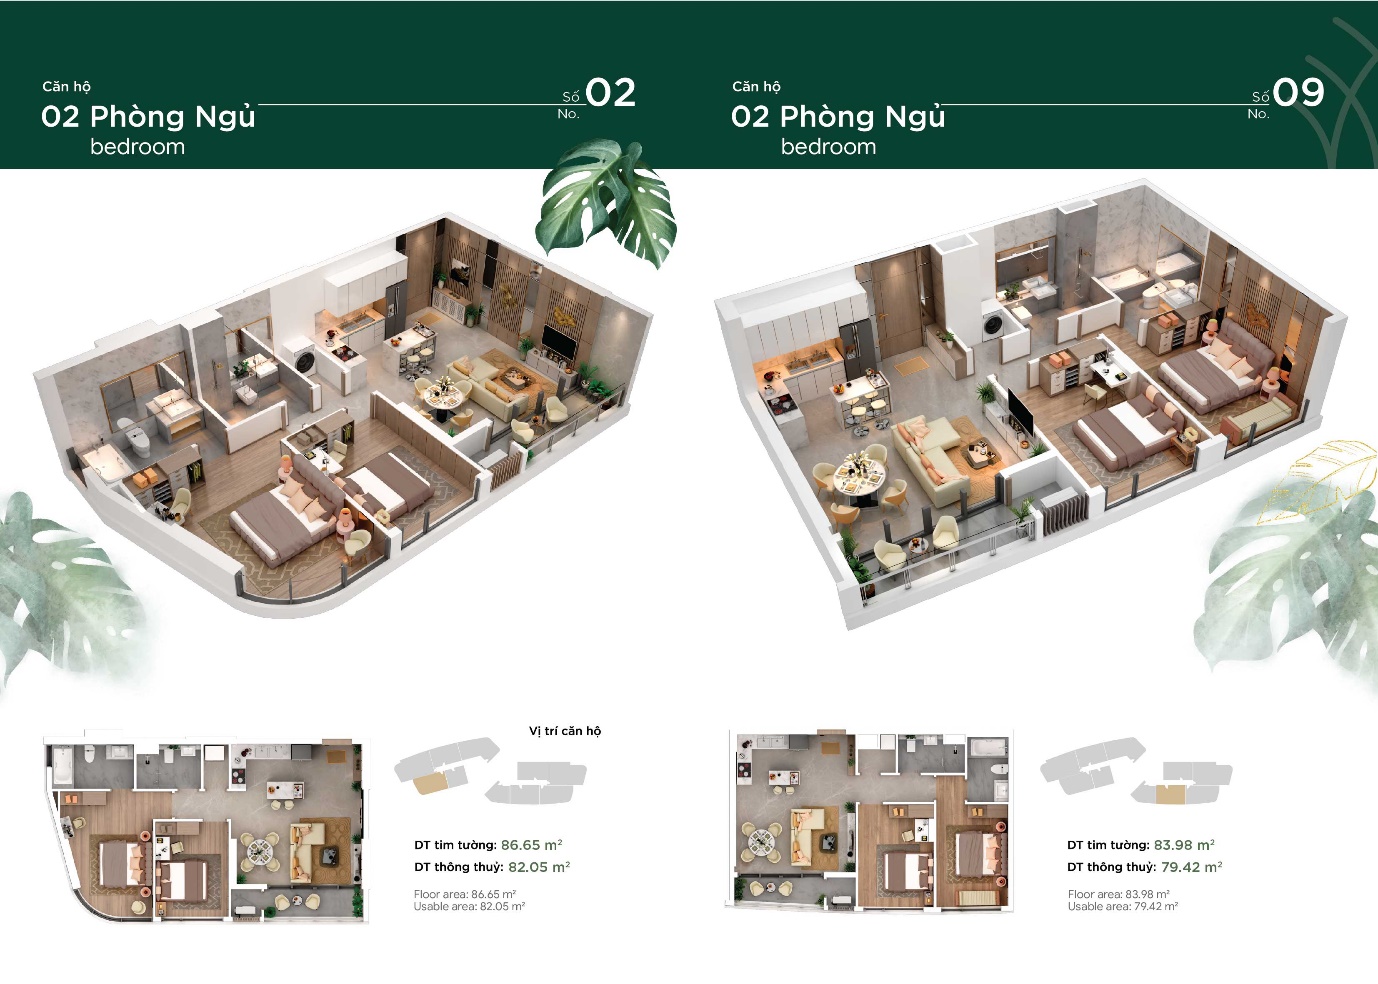 Phối cảnh thiết kế mặt bằng căn hộ 2 phòng ngủ Thảo Điền Green.